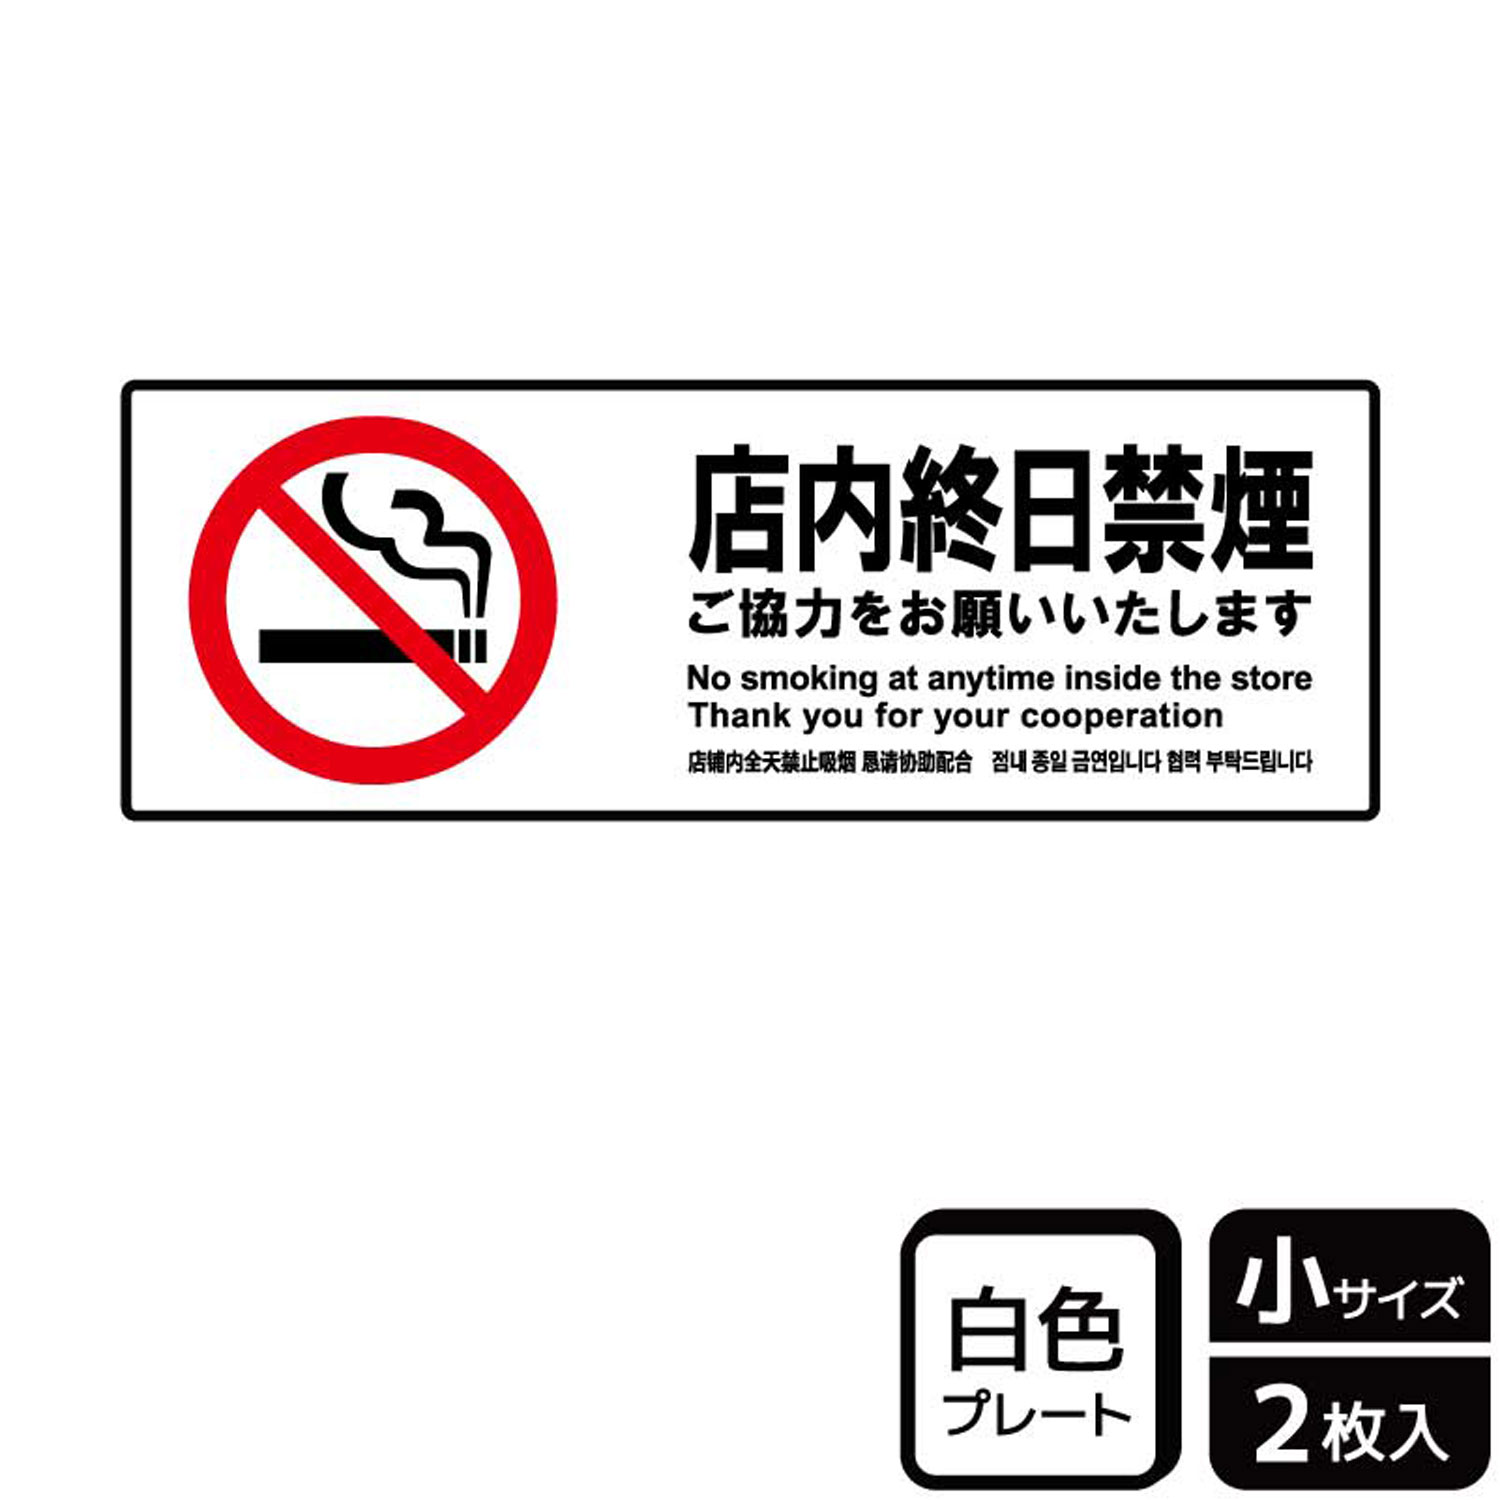 終日禁煙・喫煙禁止・タバコ禁止のお店で協力をお願いする禁煙標識サイン看板。[付属品]両面テープ(1プレートにつき4枚)。※ご注意※60℃以上となる環境下では使用しないでください。特に直射日光や風雨などにさらされる場所では、長期間の使用により印刷部が退色したりプレートが変色する可能性がありますので、定期的な取替をおすすめします。付属の両面テープは屋外でのご使用を避け、屋内でご使用ください。被着体によっては接着しにくい場合があります。また、はがす際に被着体を傷めるおそれがあります。商品コード00358717メーカー名KALBASサイズ190×65mm・注意事項：モニターの発色によって色が異なって見える場合がございます。・領収書については、楽天お客様マイページから、商品出荷後にお客様自身で印刷して頂きますようお願い申し上げます。・本店では一つの注文に対して、複数の送り先を指定することができません。お手数おかけしますが、注文を分けていただきます様お願い致します。・支払い方法で前払いを指定されて、支払いまで日数が空く場合、商品が廃番もしくは欠品になる恐れがございます。ご了承ください。・注文が重なった場合、発送予定日が遅れる可能性がございます。ご了承ください。・お急ぎの場合はなるべく支払い方法で前払い以外を選択いただきます様お願い致します。支払い時期によっては希望納期に間に合わない場合がございます。